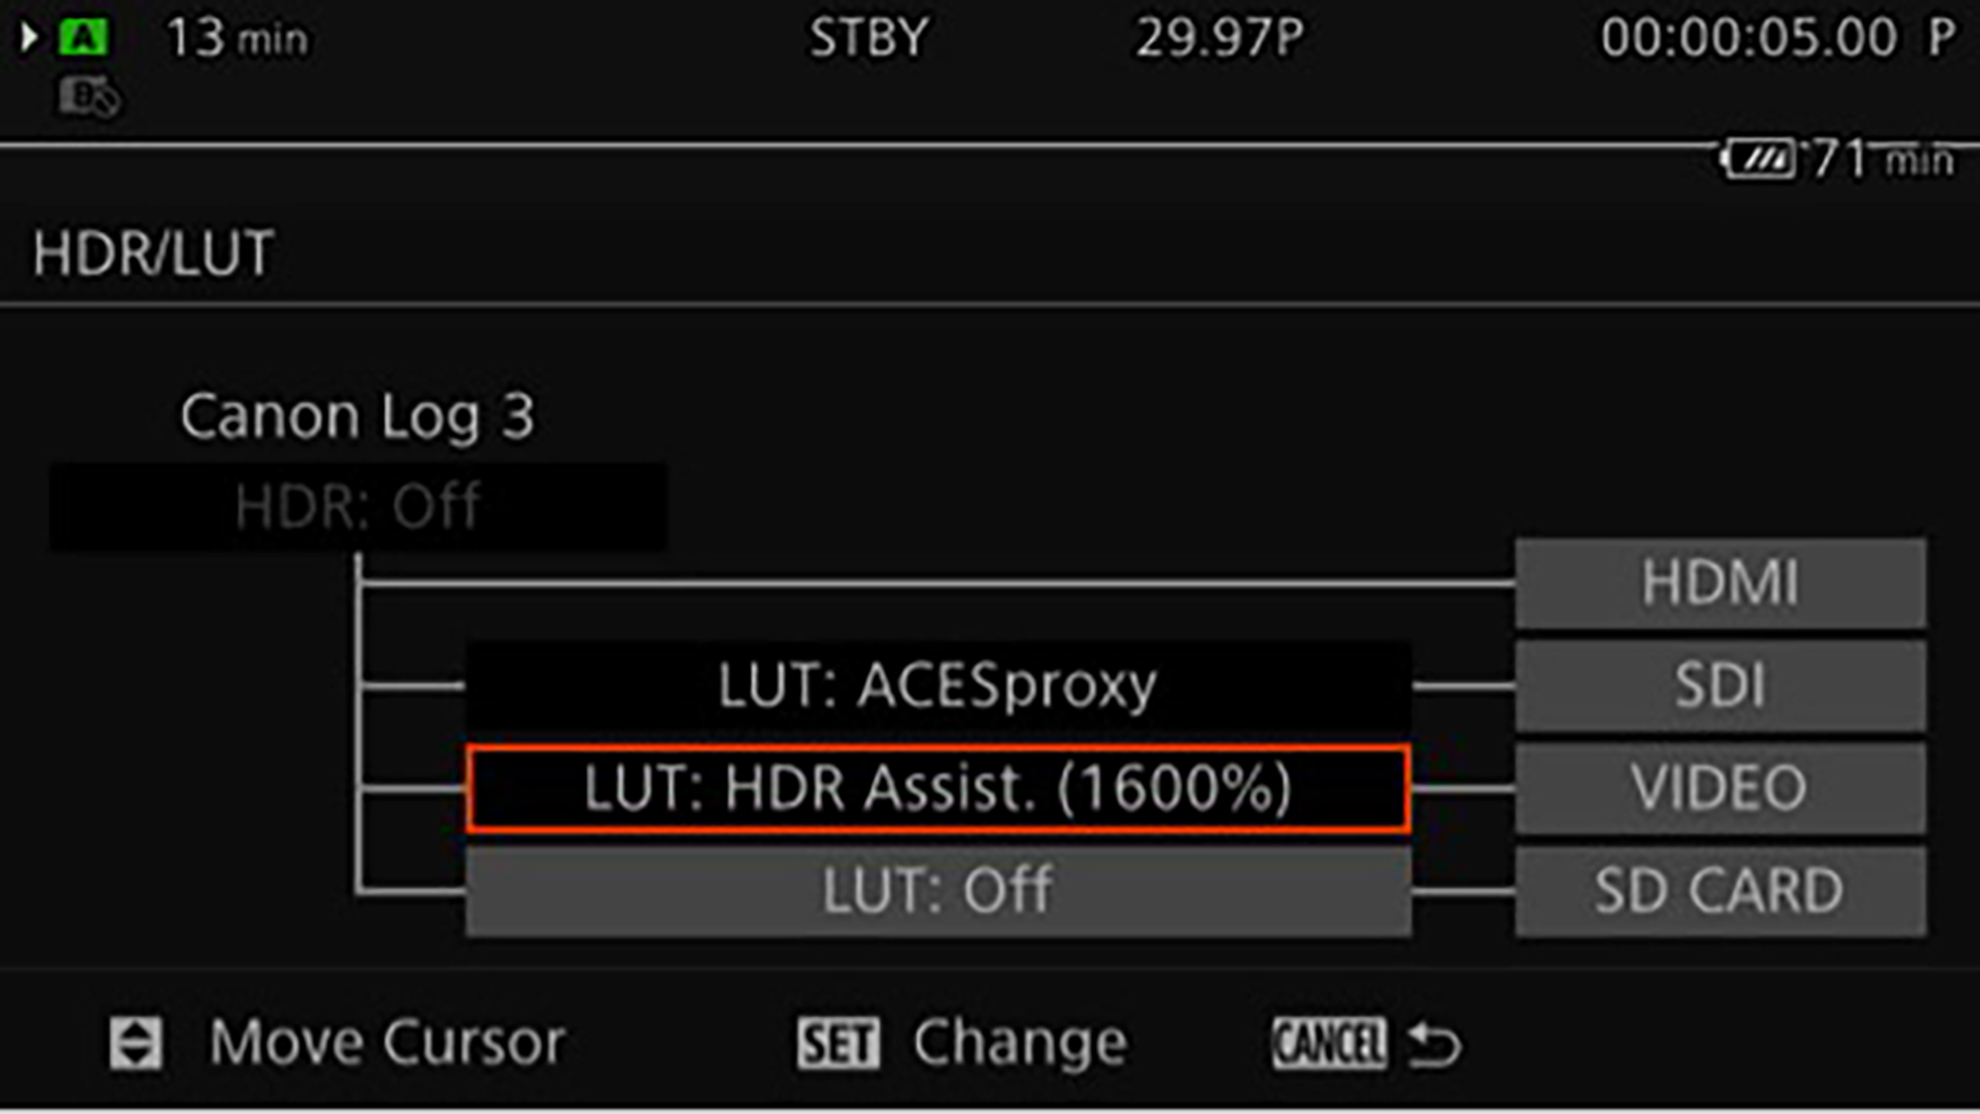 EOS C200 HDR/LUT